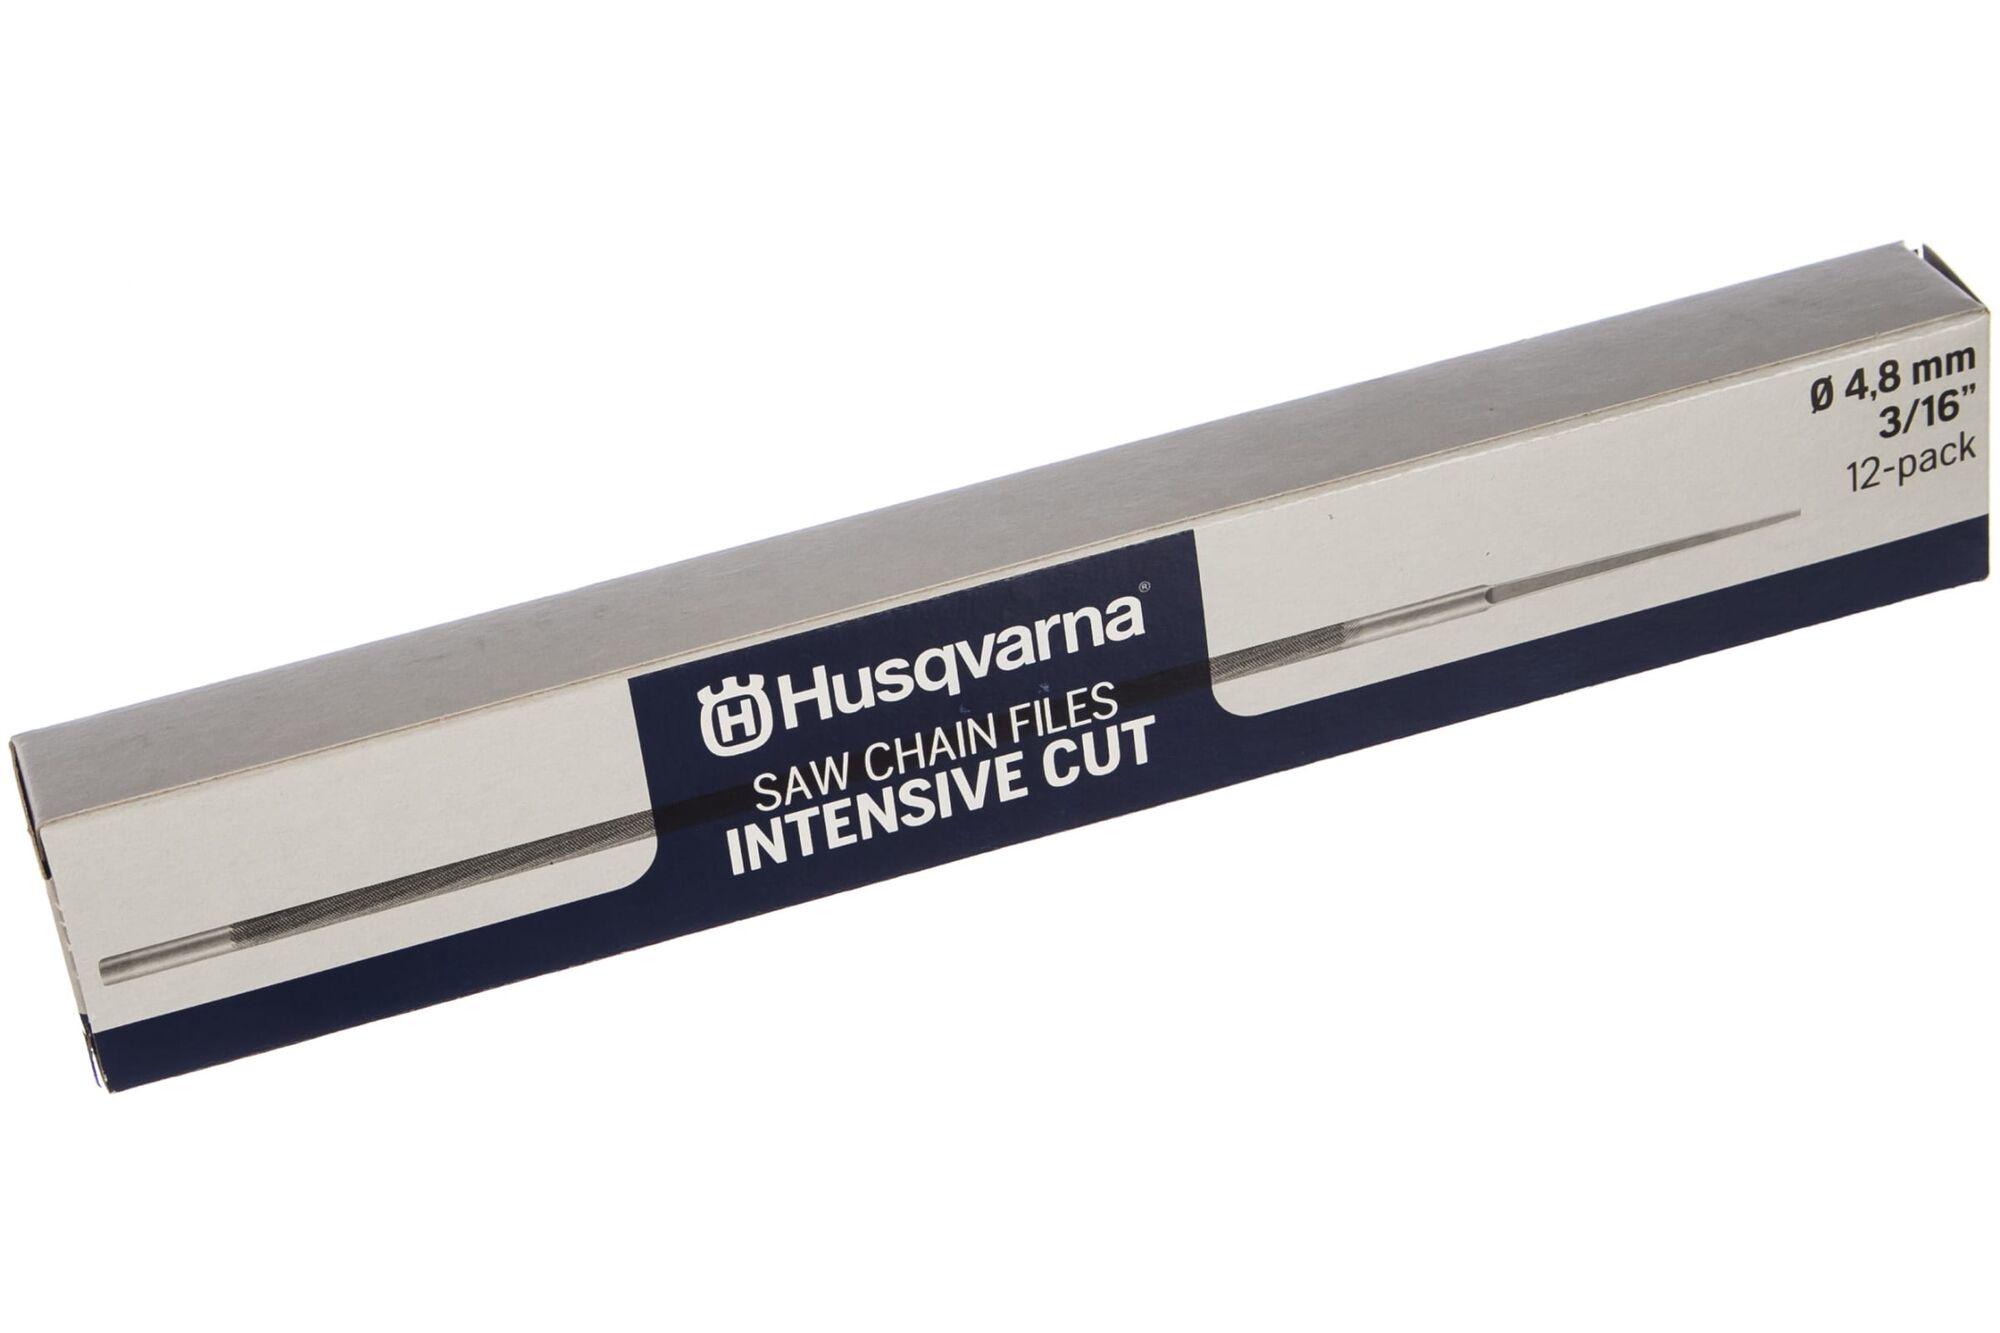 Круглый напильник повышенной стойкости Husqvarna IntensiveCut 4.8 мм, 12 шт. 5973558-02 2